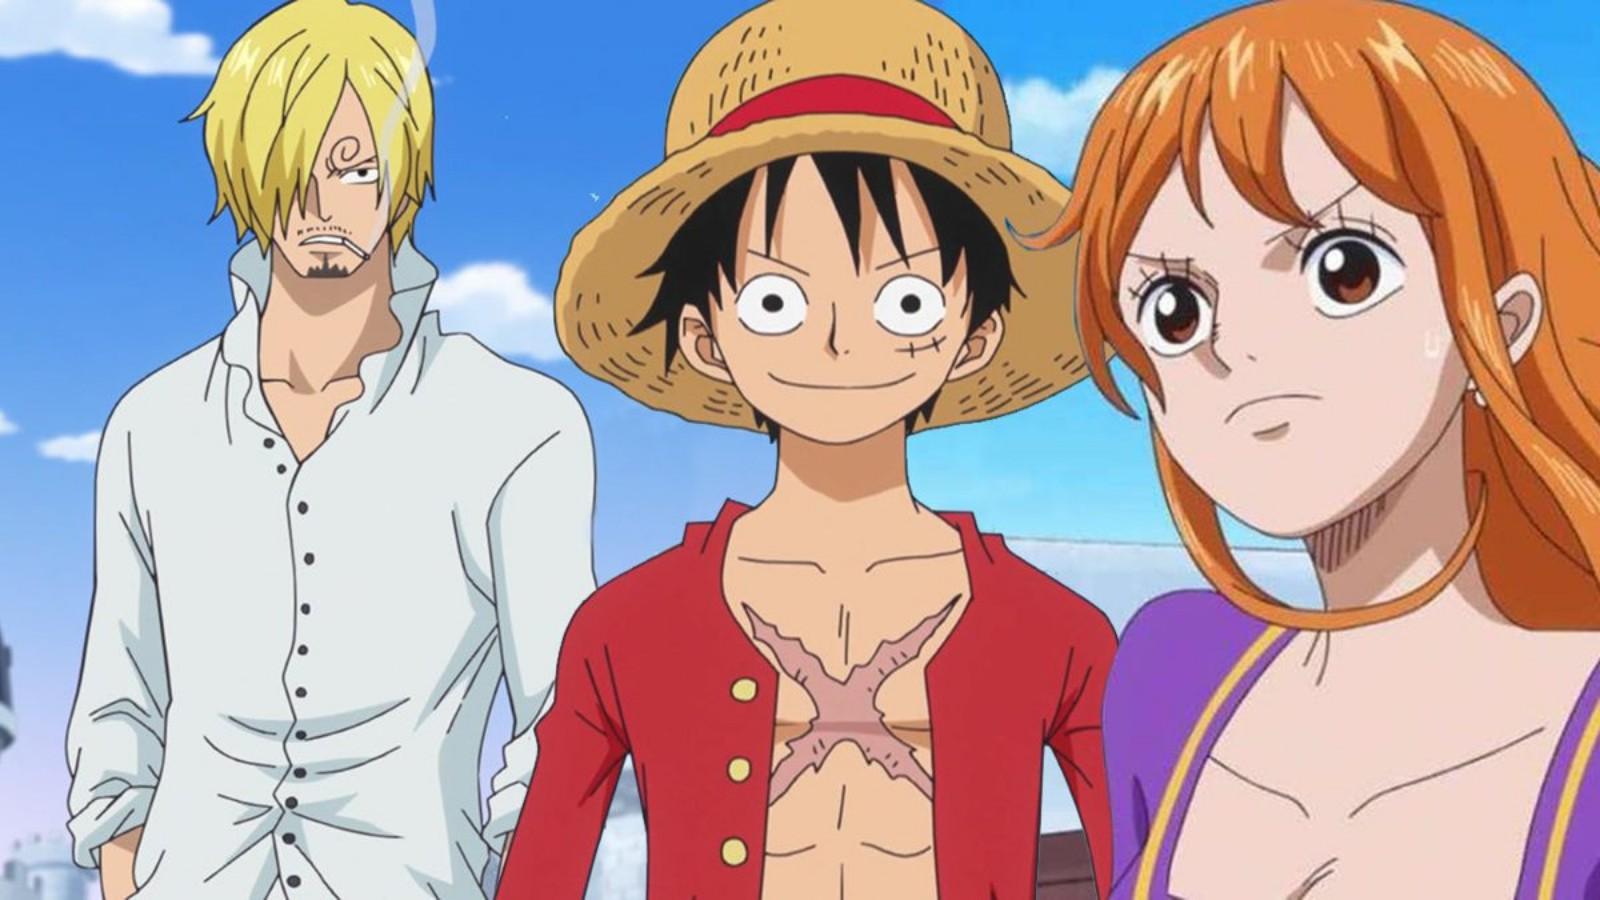 The original One Piece